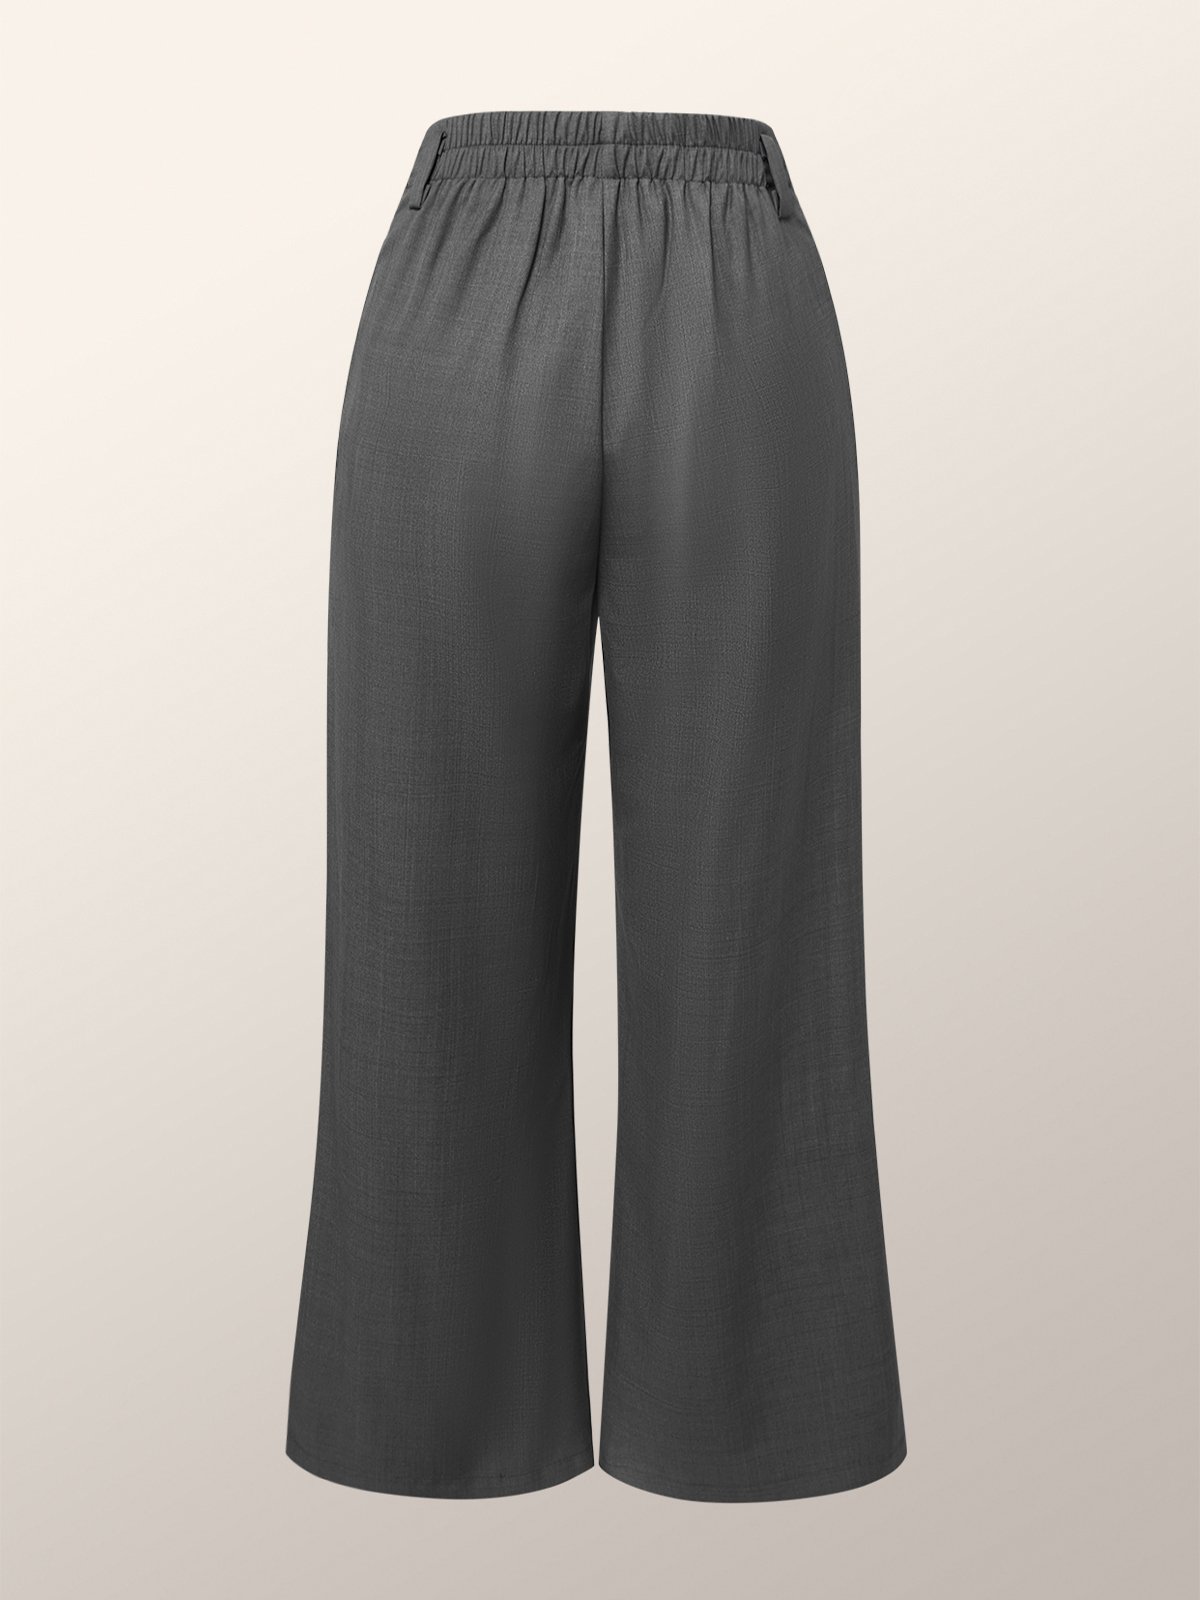 Urban Regular Fit Plain Fashion Pants | stylewe